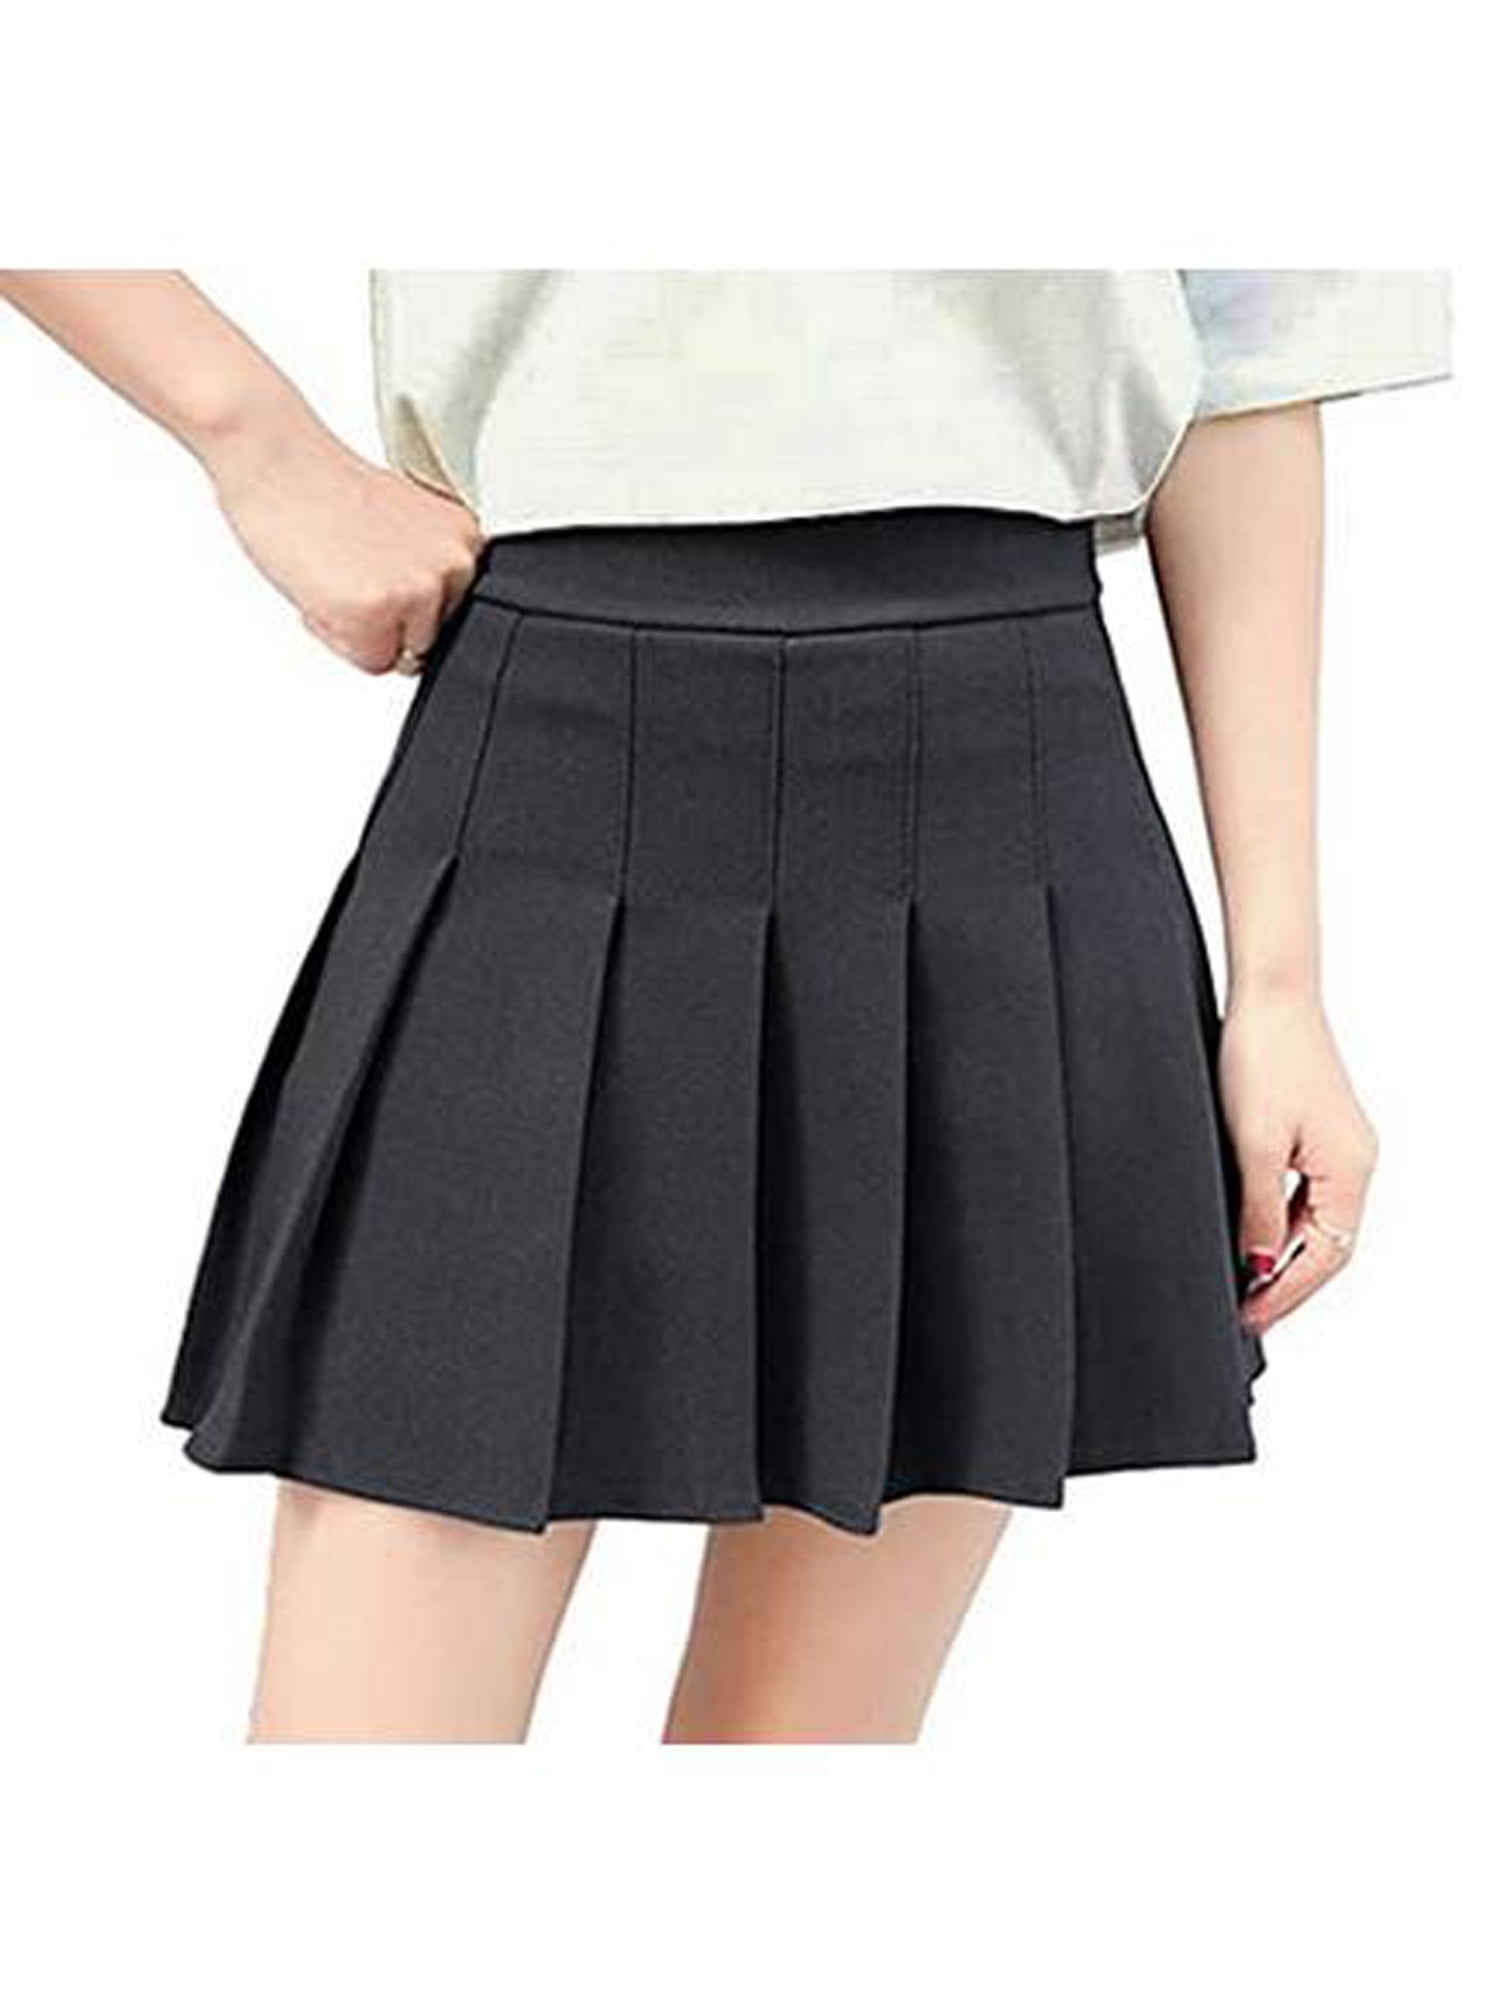 Ladies Short Skater Skirt Flared Belted Plain Mini Skirt Womens Sizes 10-14 